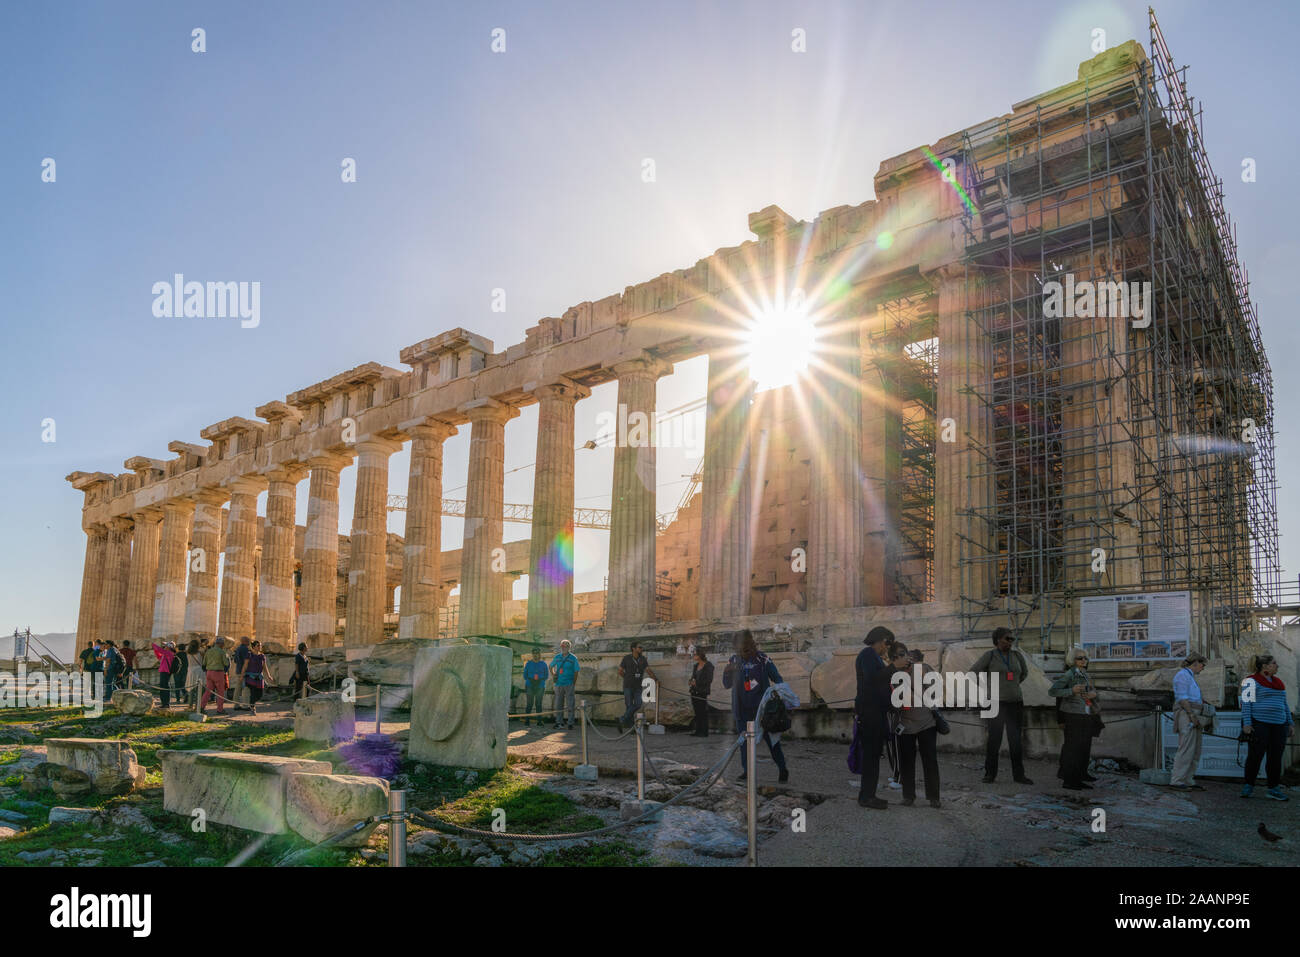 5 Nov 2019 - Athen, Griechenland. Der Parthenon bei Sonnenaufgang. Ehemalige Tempel auf der Athener Akropolis, der der Göttin Athene geweiht. Stockfoto